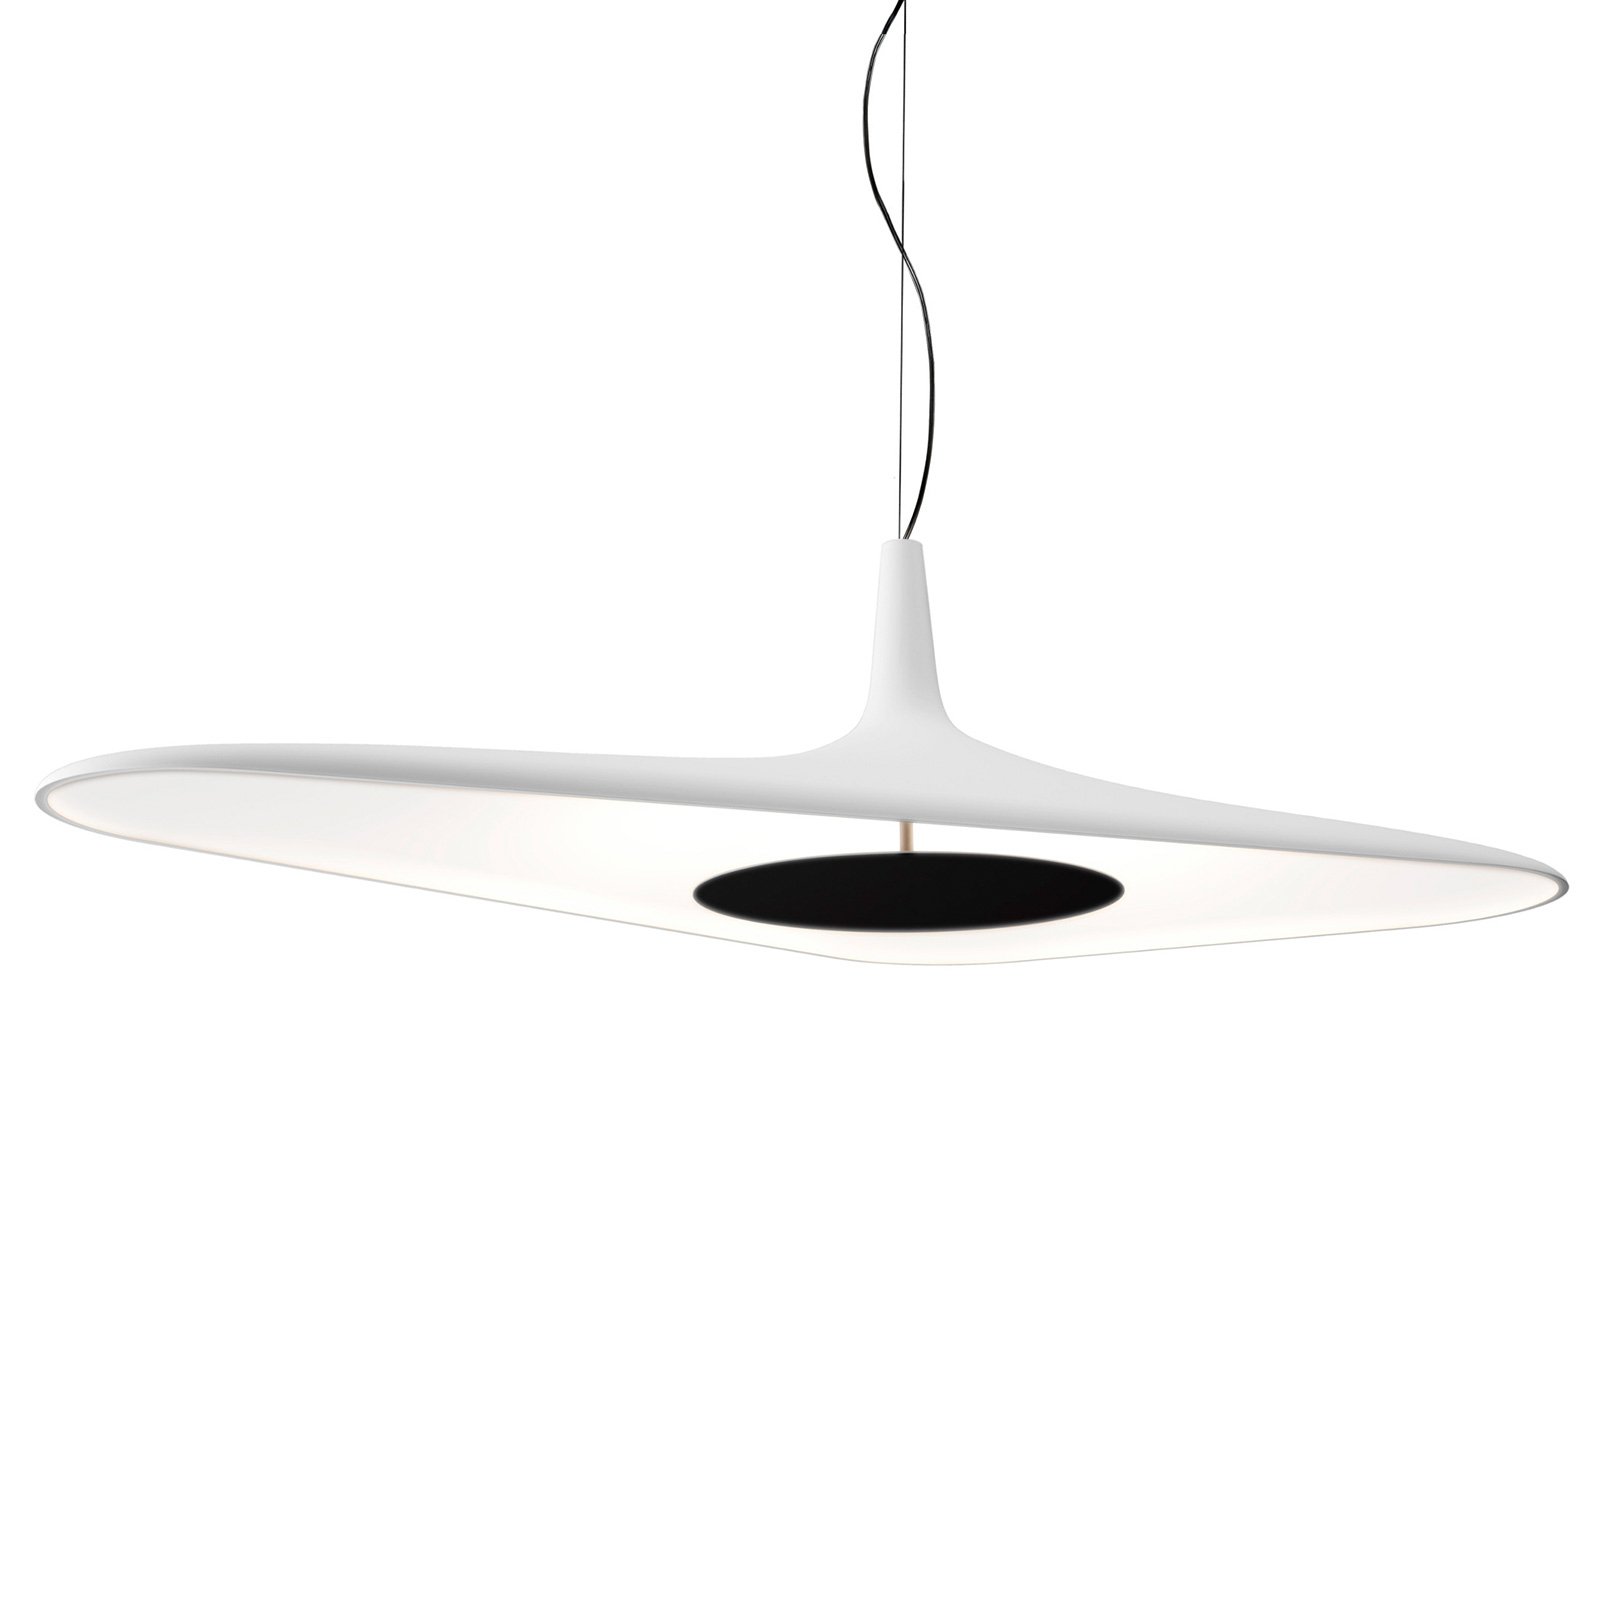 Luceplan Soleil Noir - LED висящо осветление, бяло